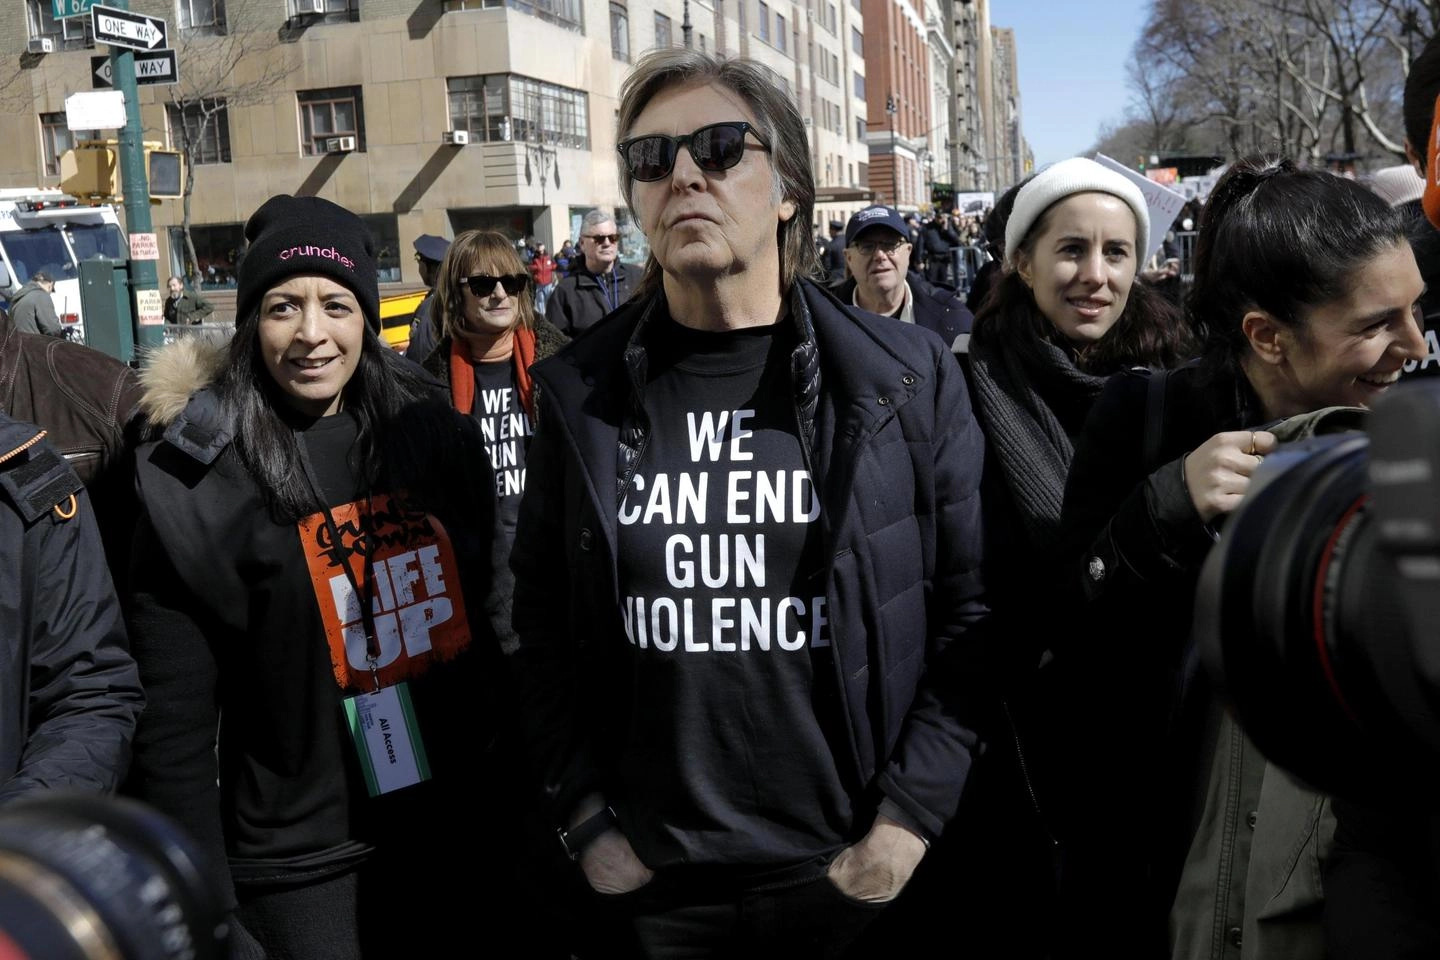 Paul McCartney in strada a New York. Indossa una maglietta: "Possiamo fermare la violenza"